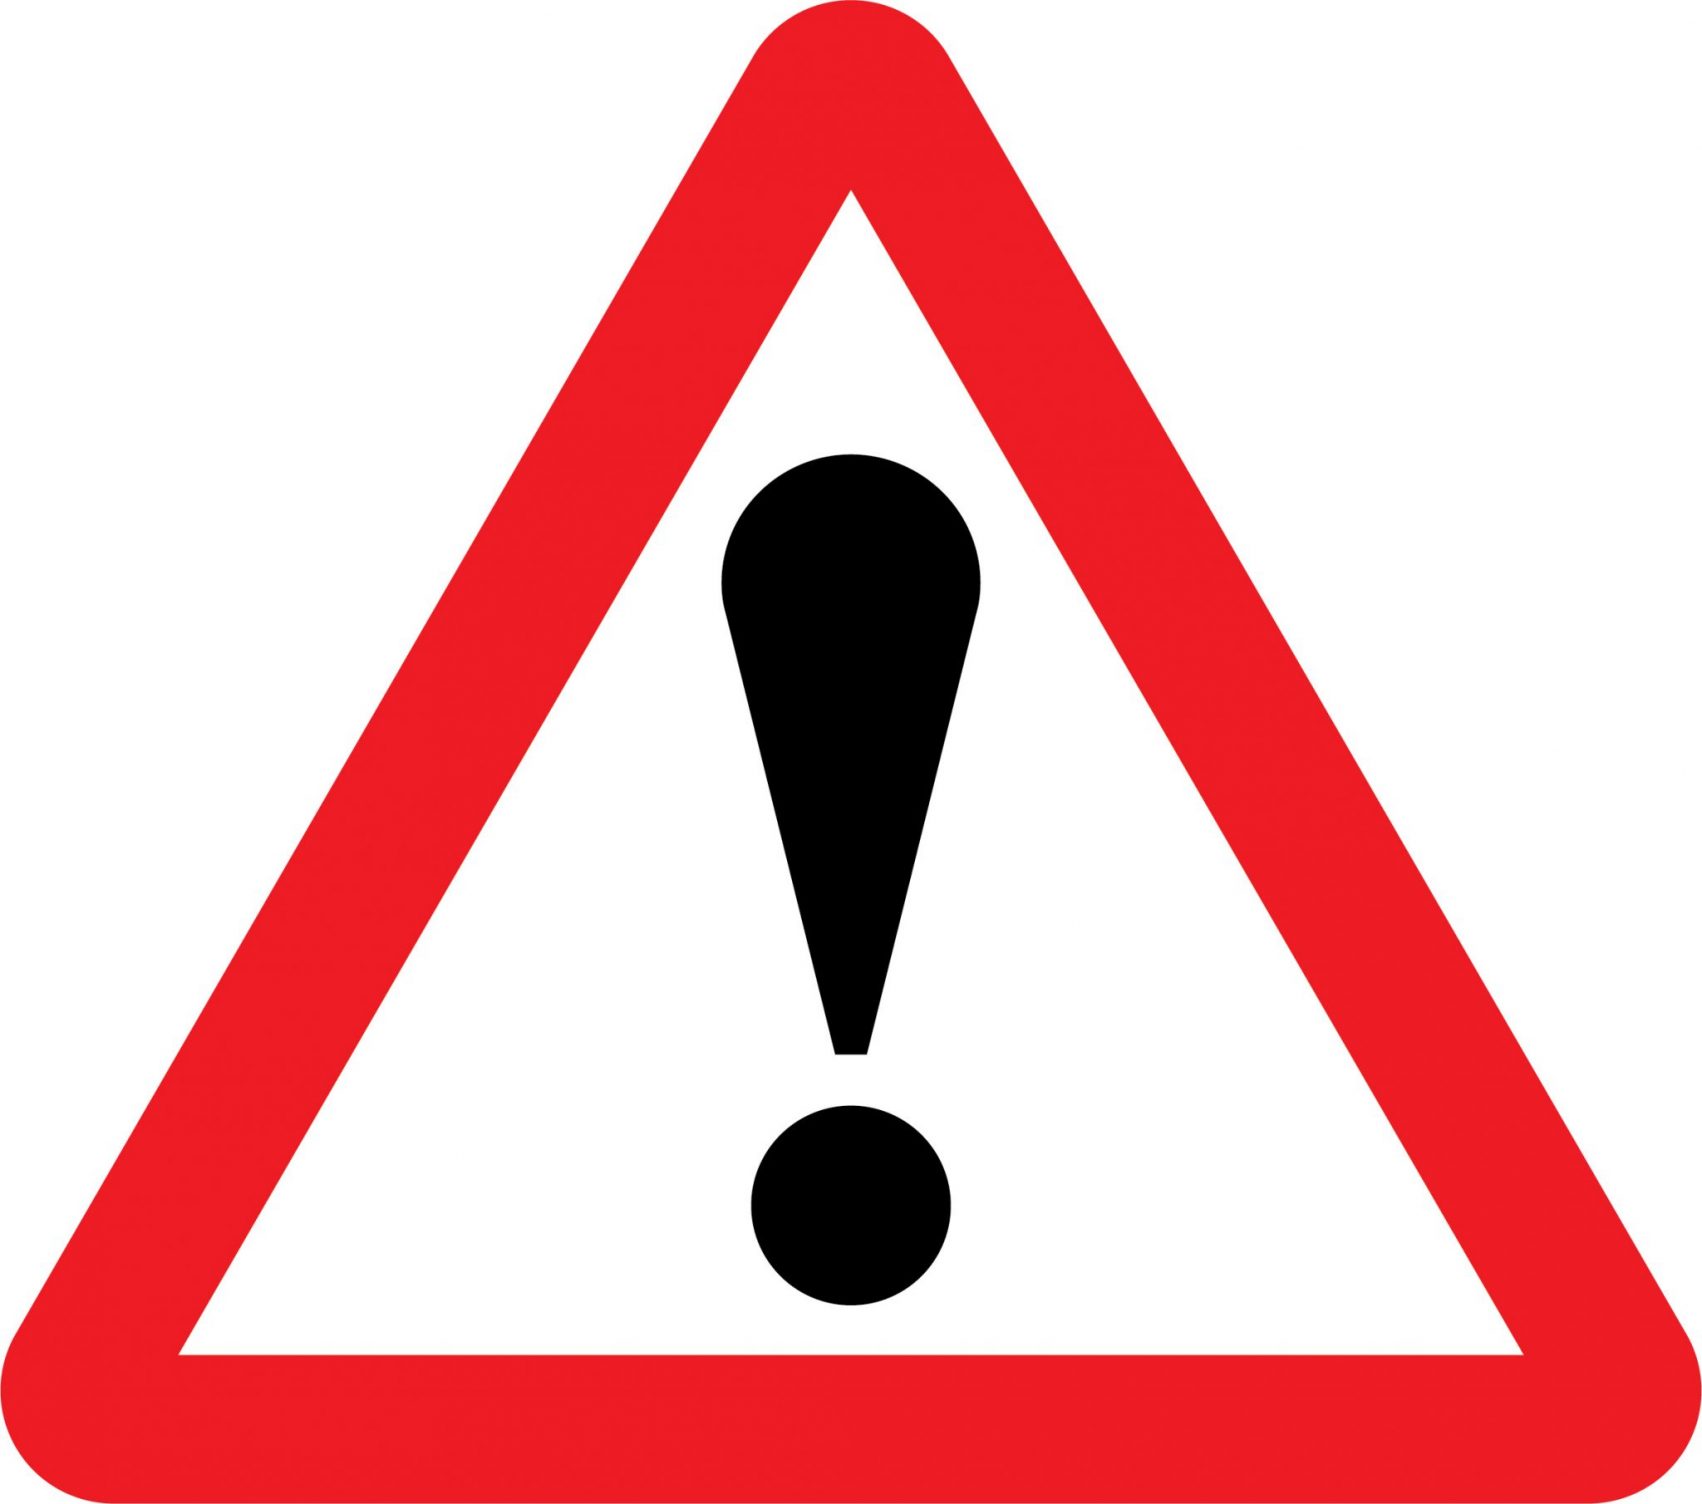 Warning Signs Road Signs